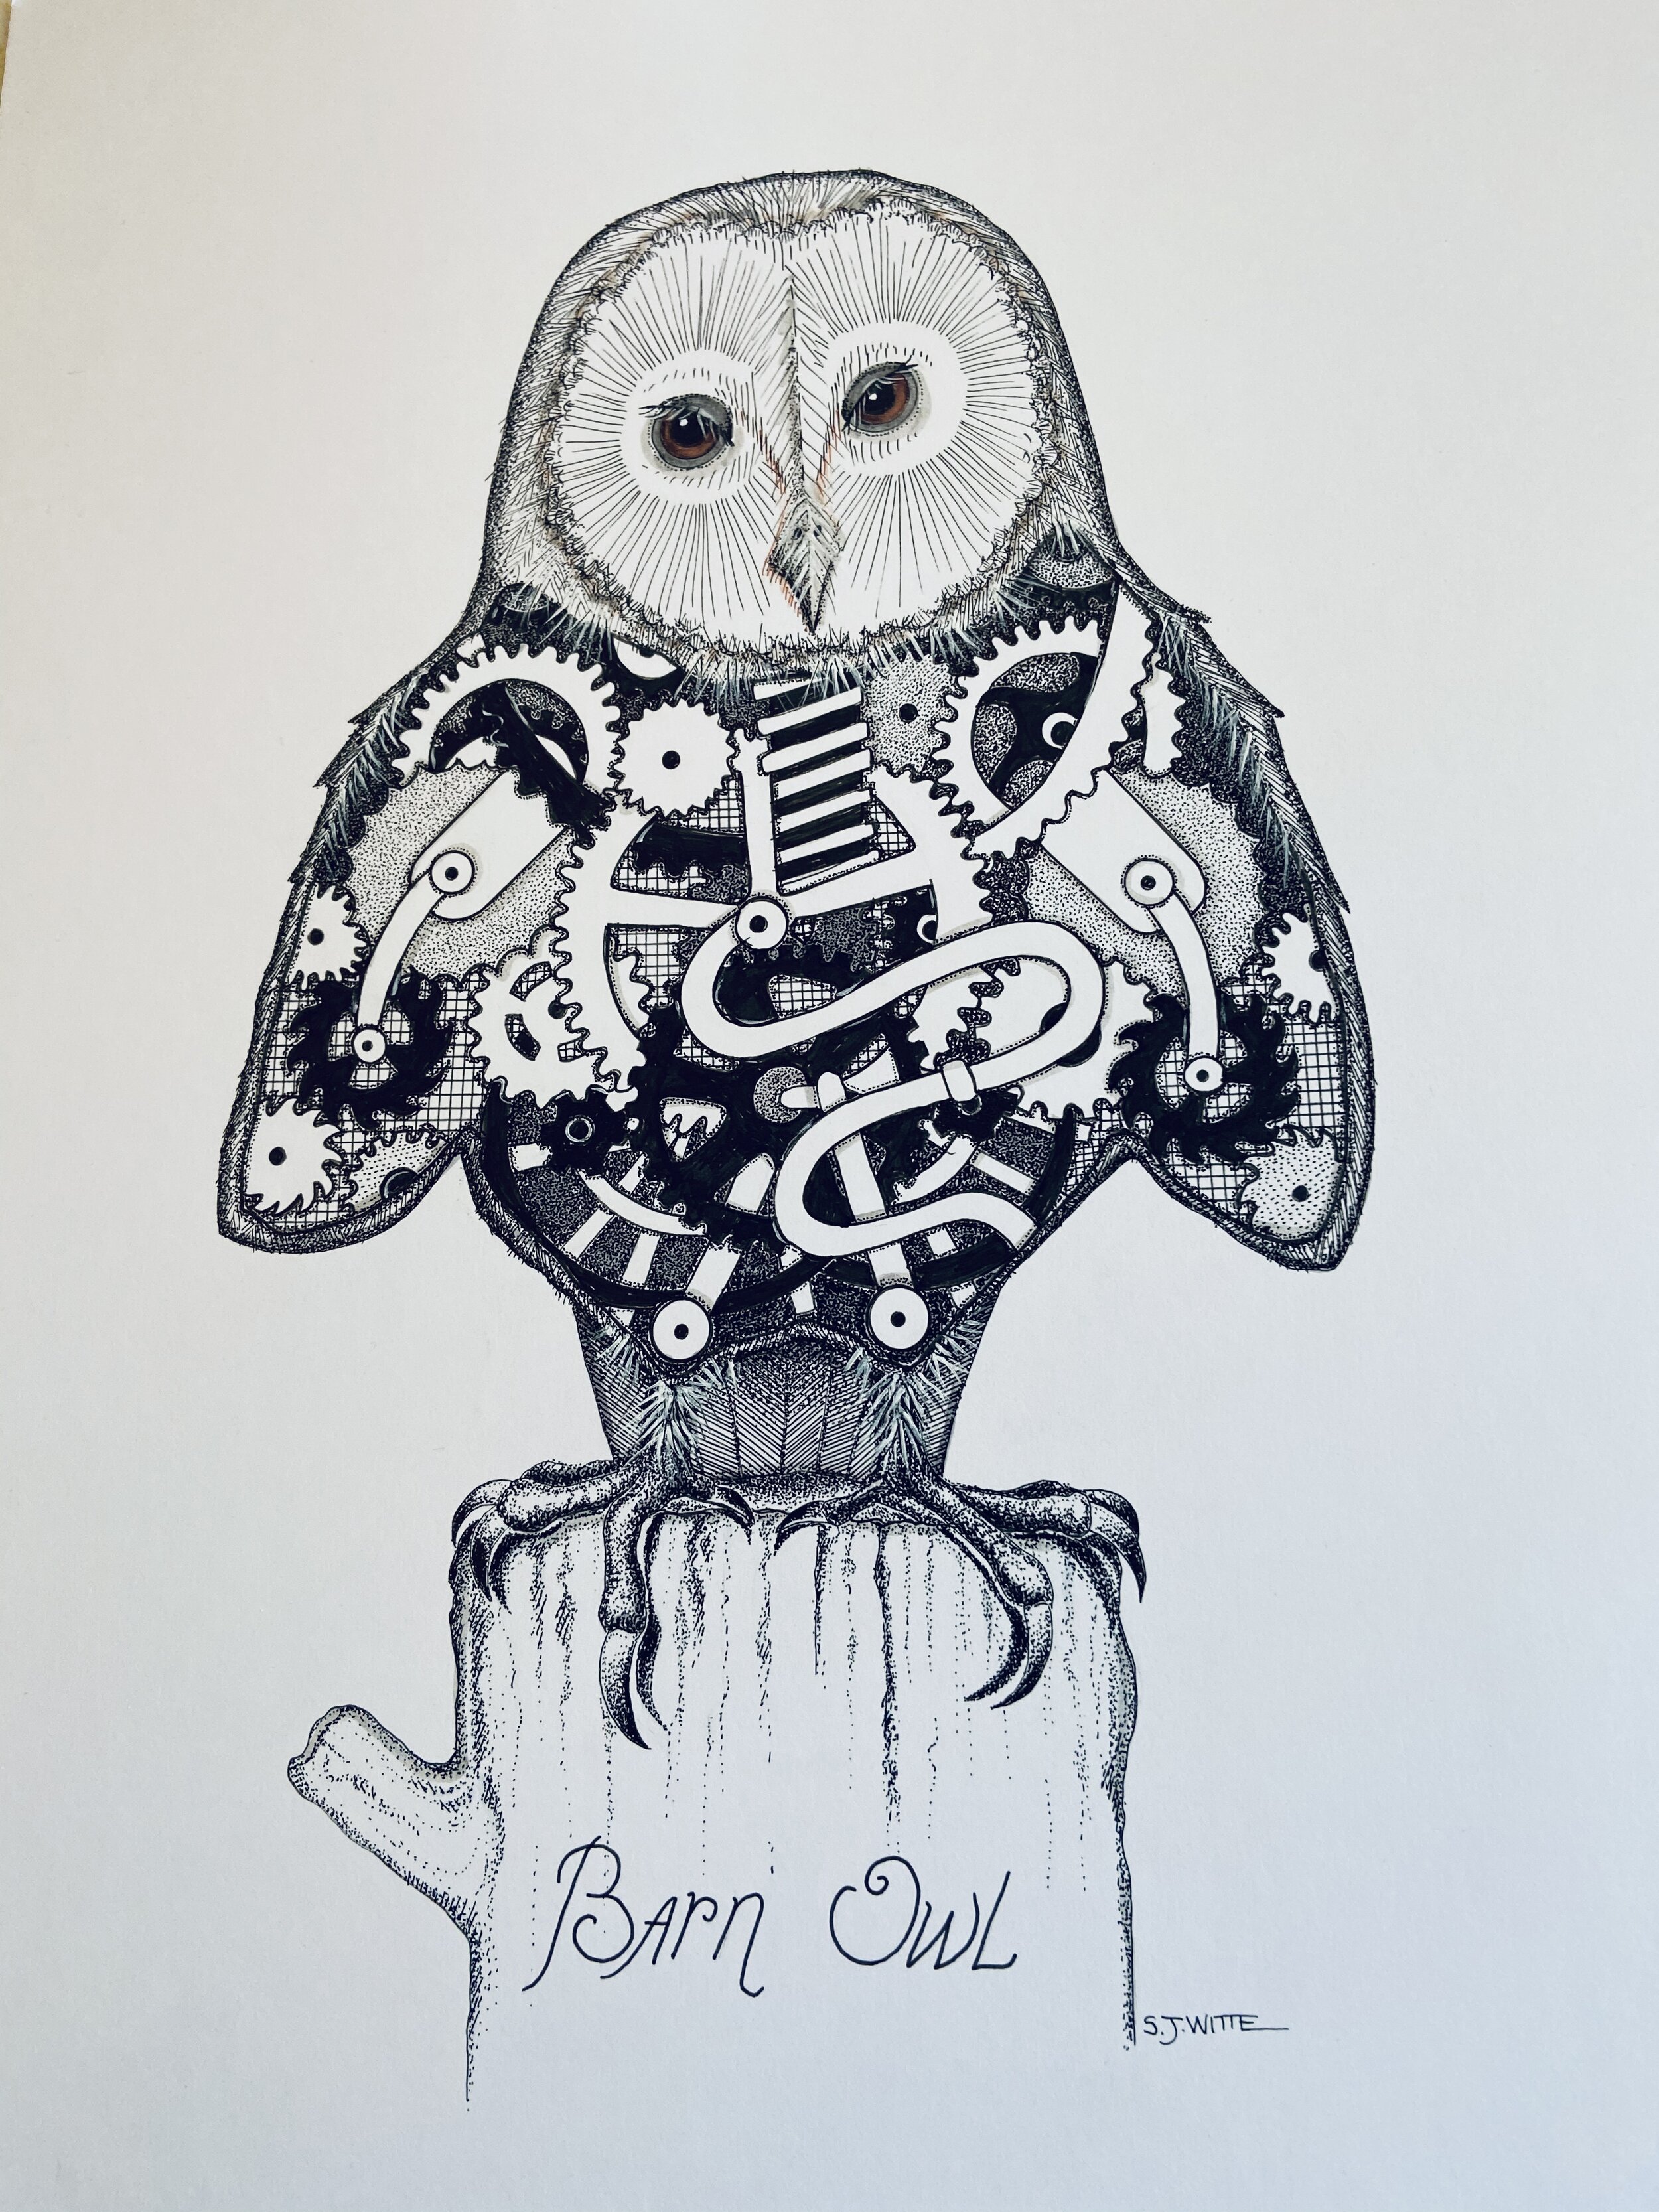 BioMech Owl